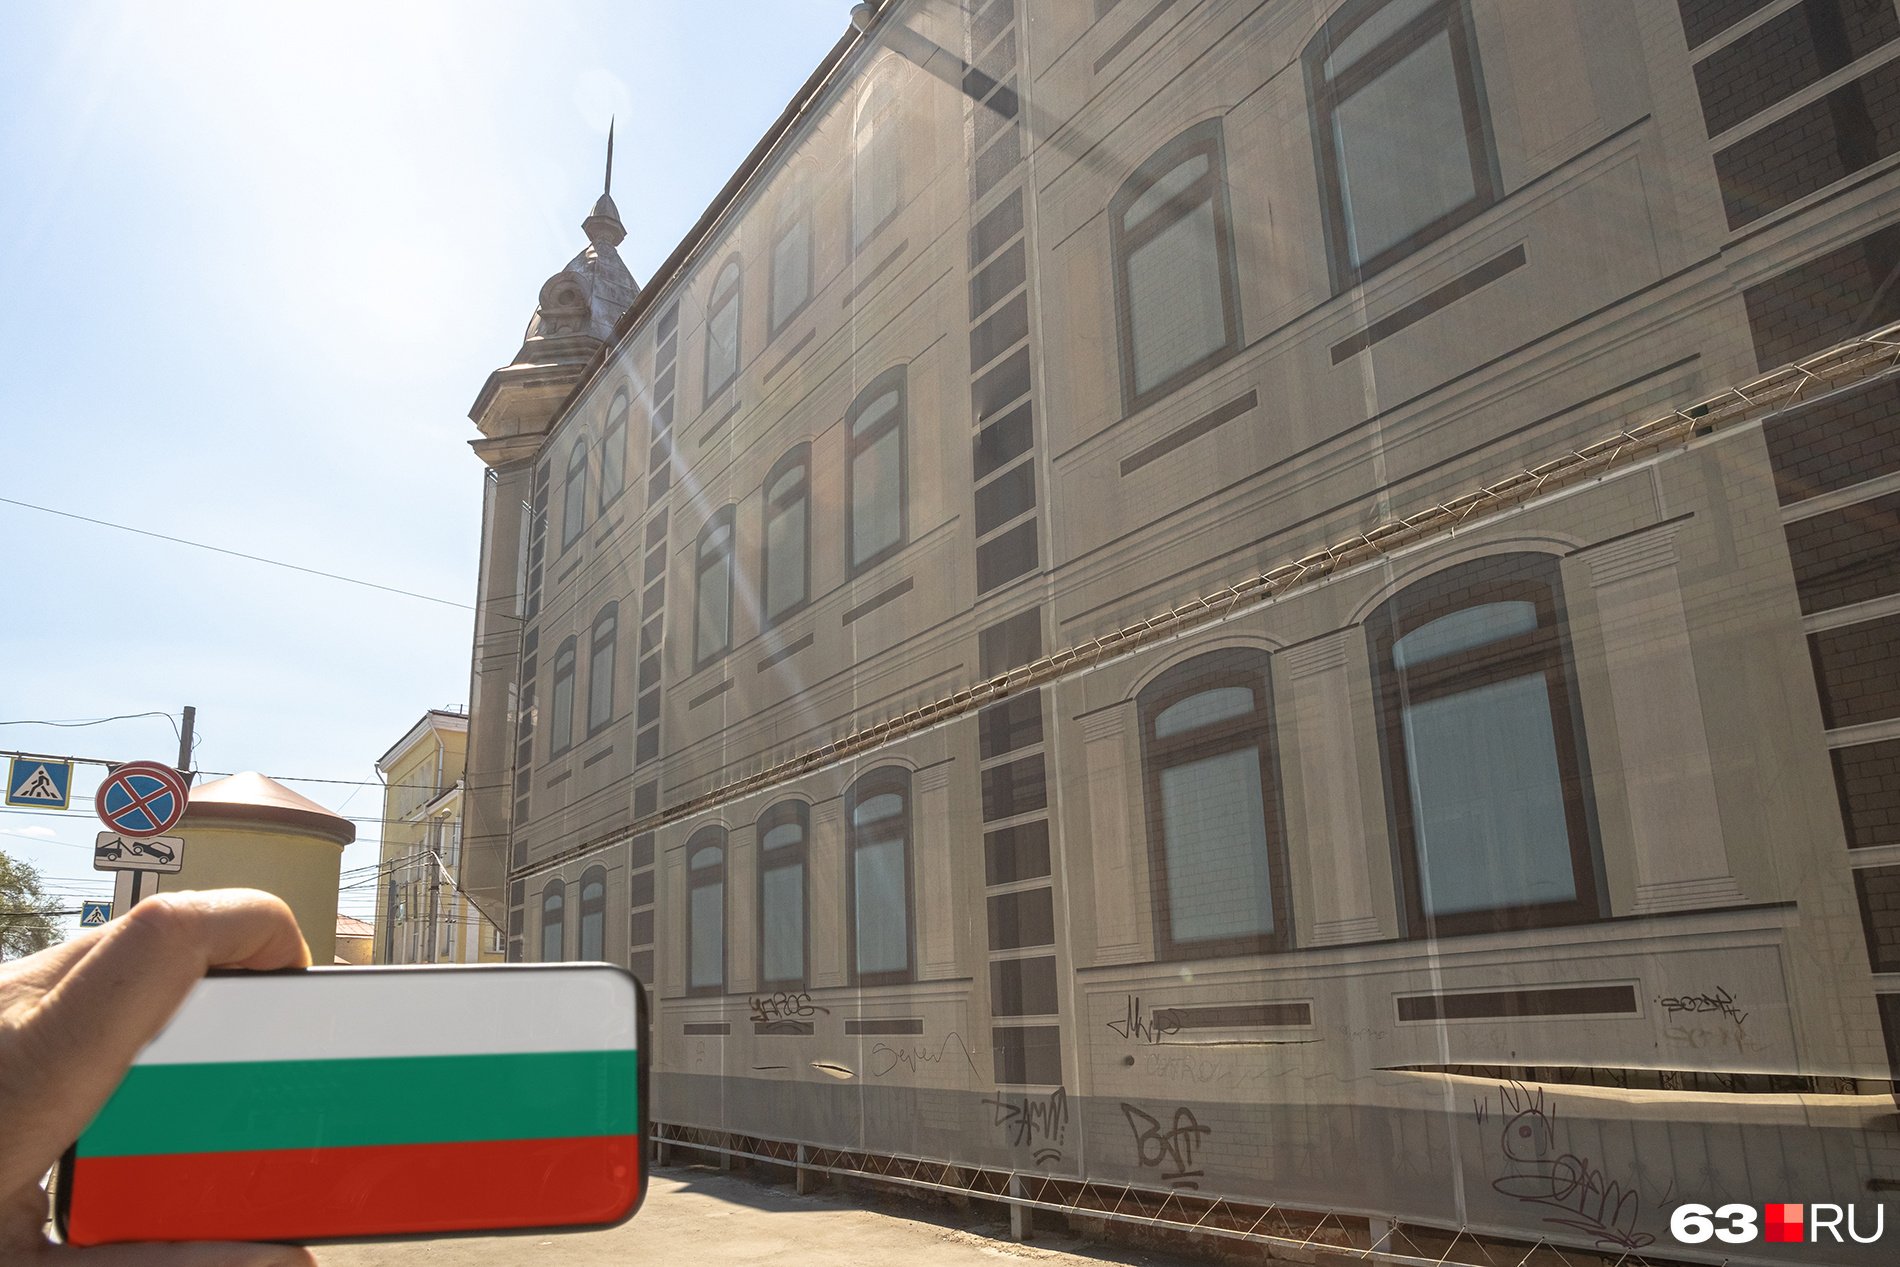 <nobr class="_">Молодогвардейская, 126</nobr> — посольство Болгарии